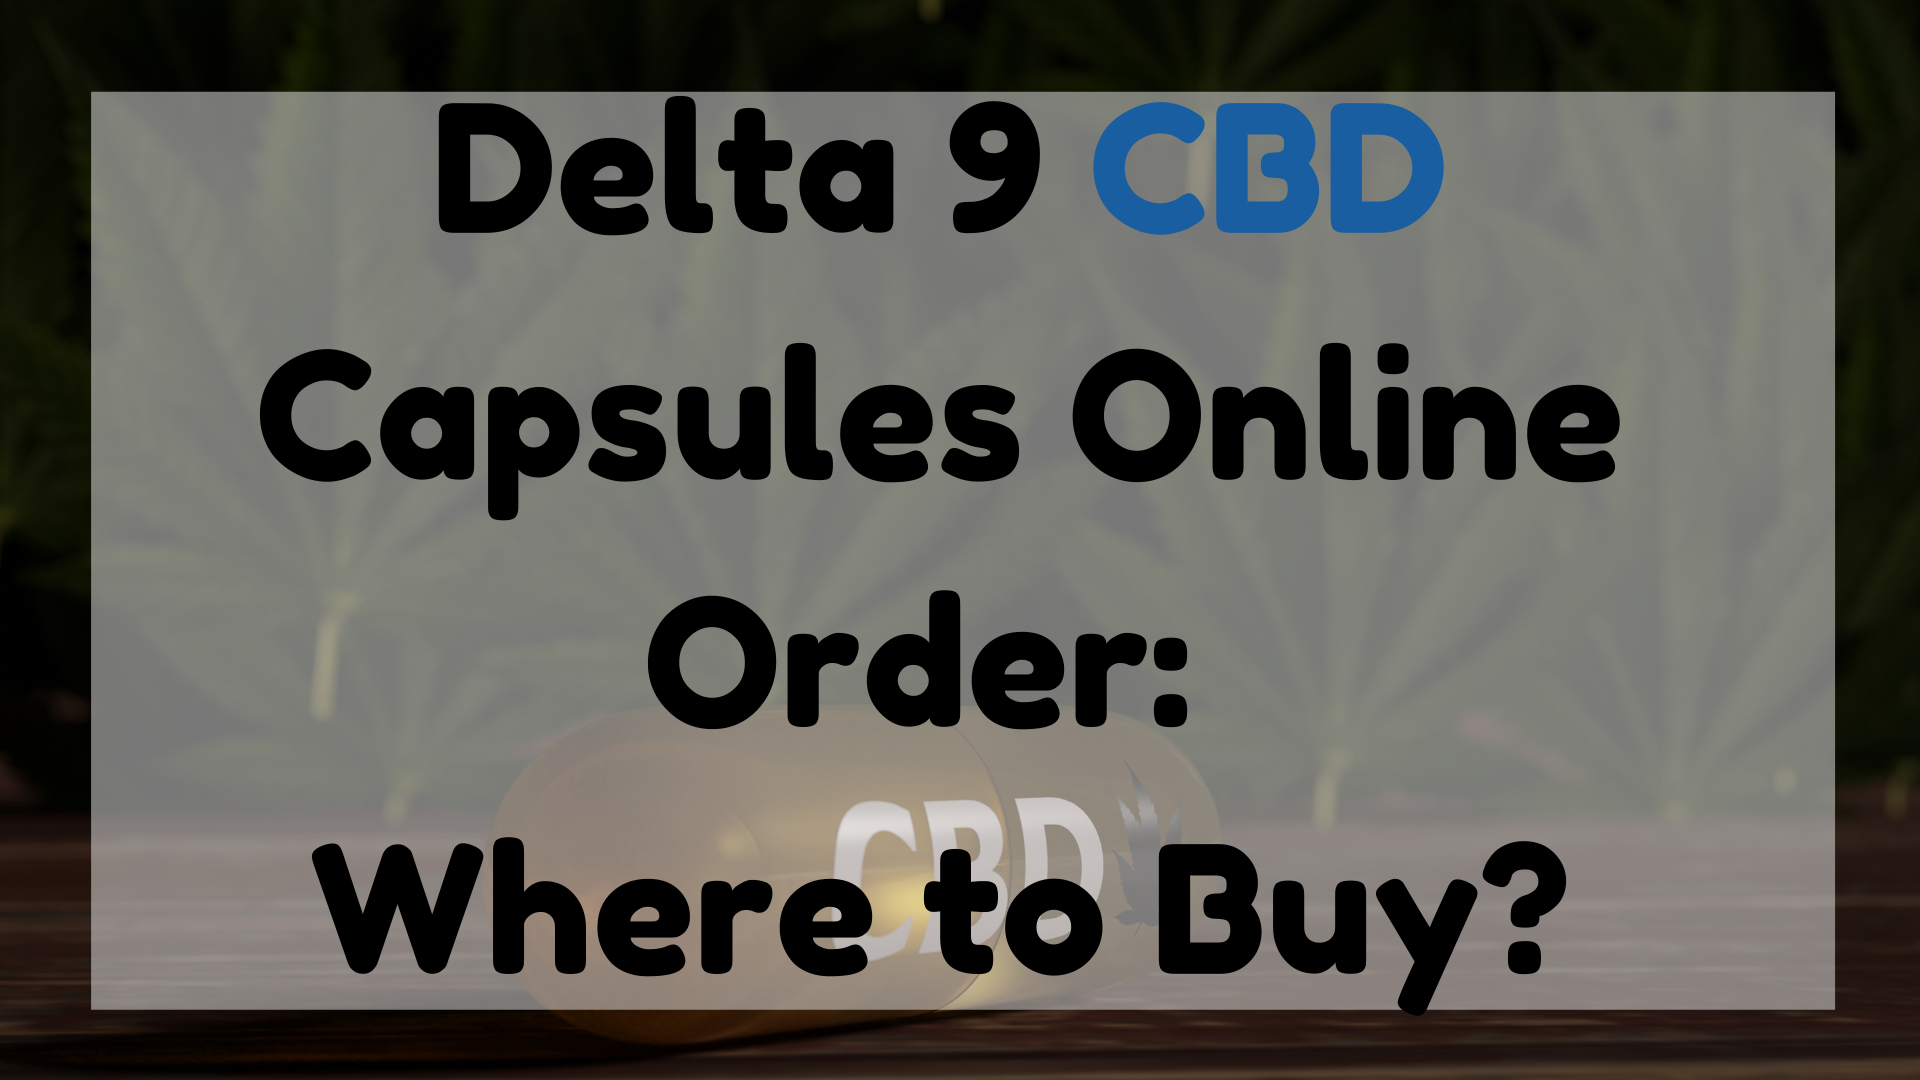 Delta 9 CBD Capsules Online Order